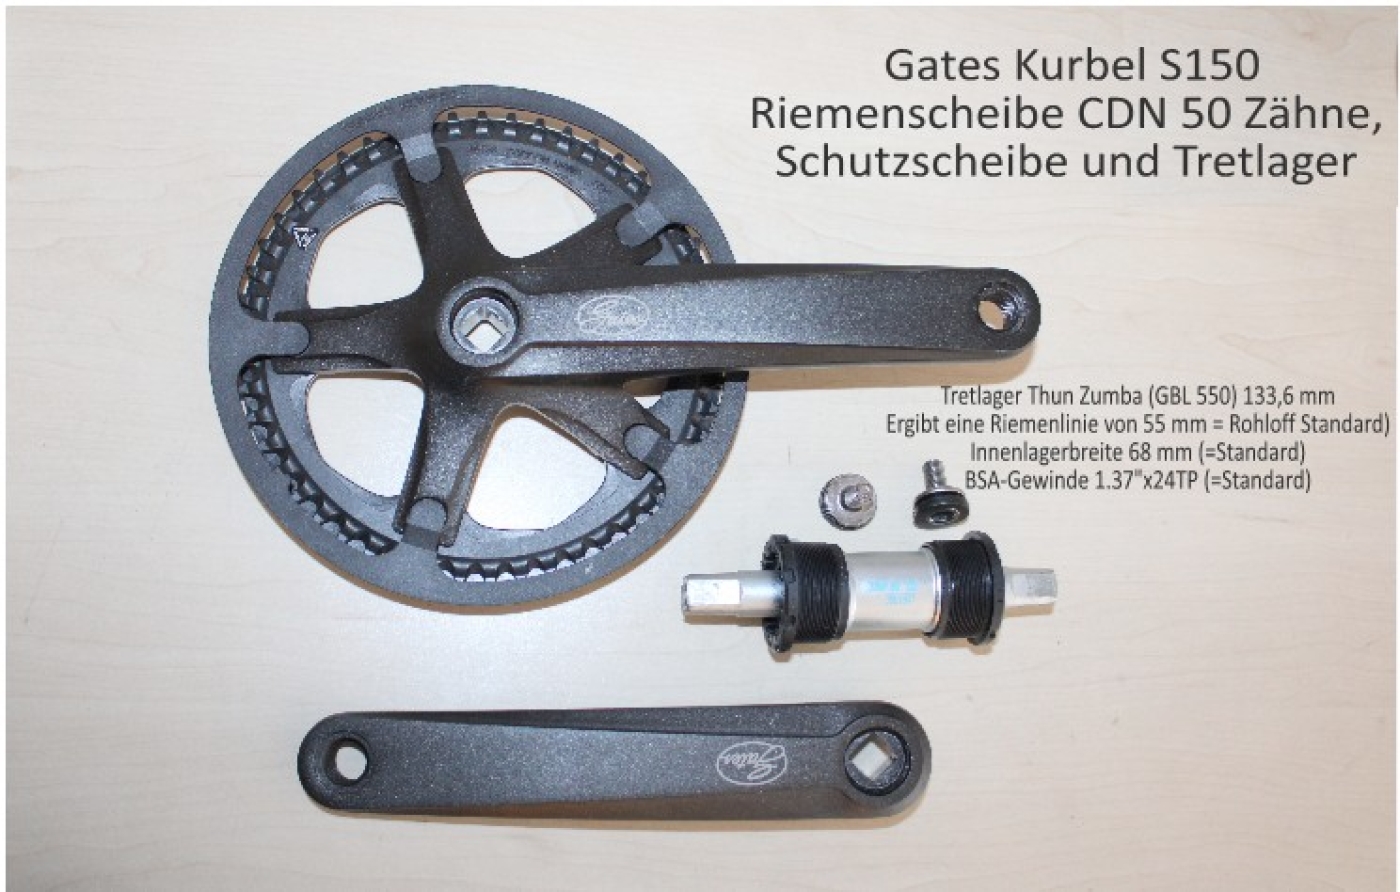 Gates Kurbel S150 mit  Riemenschutzscheibe - opt. mit  Thun Zumba Innenlager (Tretlager) 133,6 mm für Rohloff mit Riemenantrieb - Sonderpreis